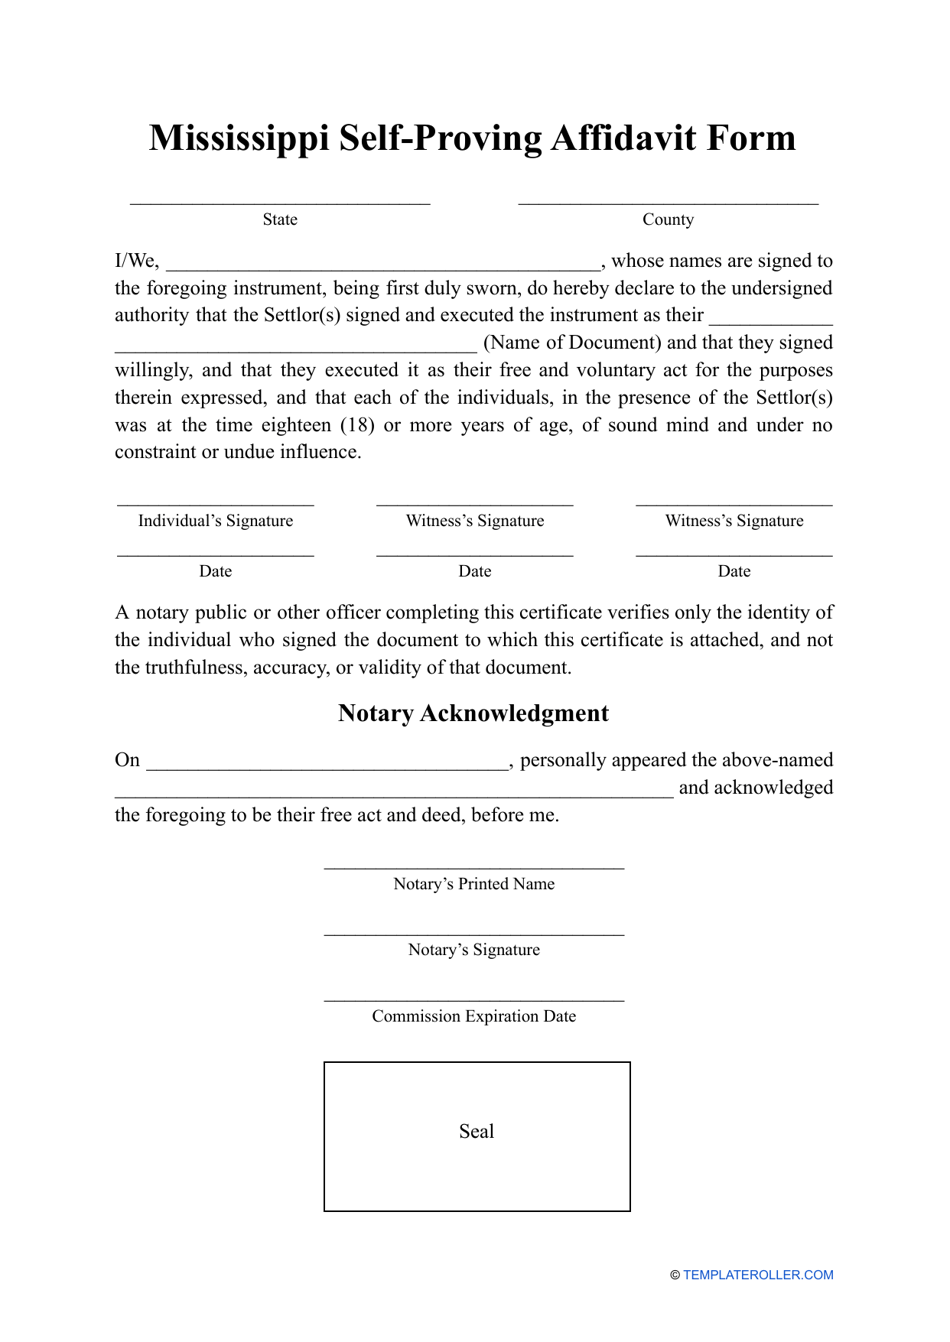 Self-proving Affidavit Form - Mississippi, Page 1